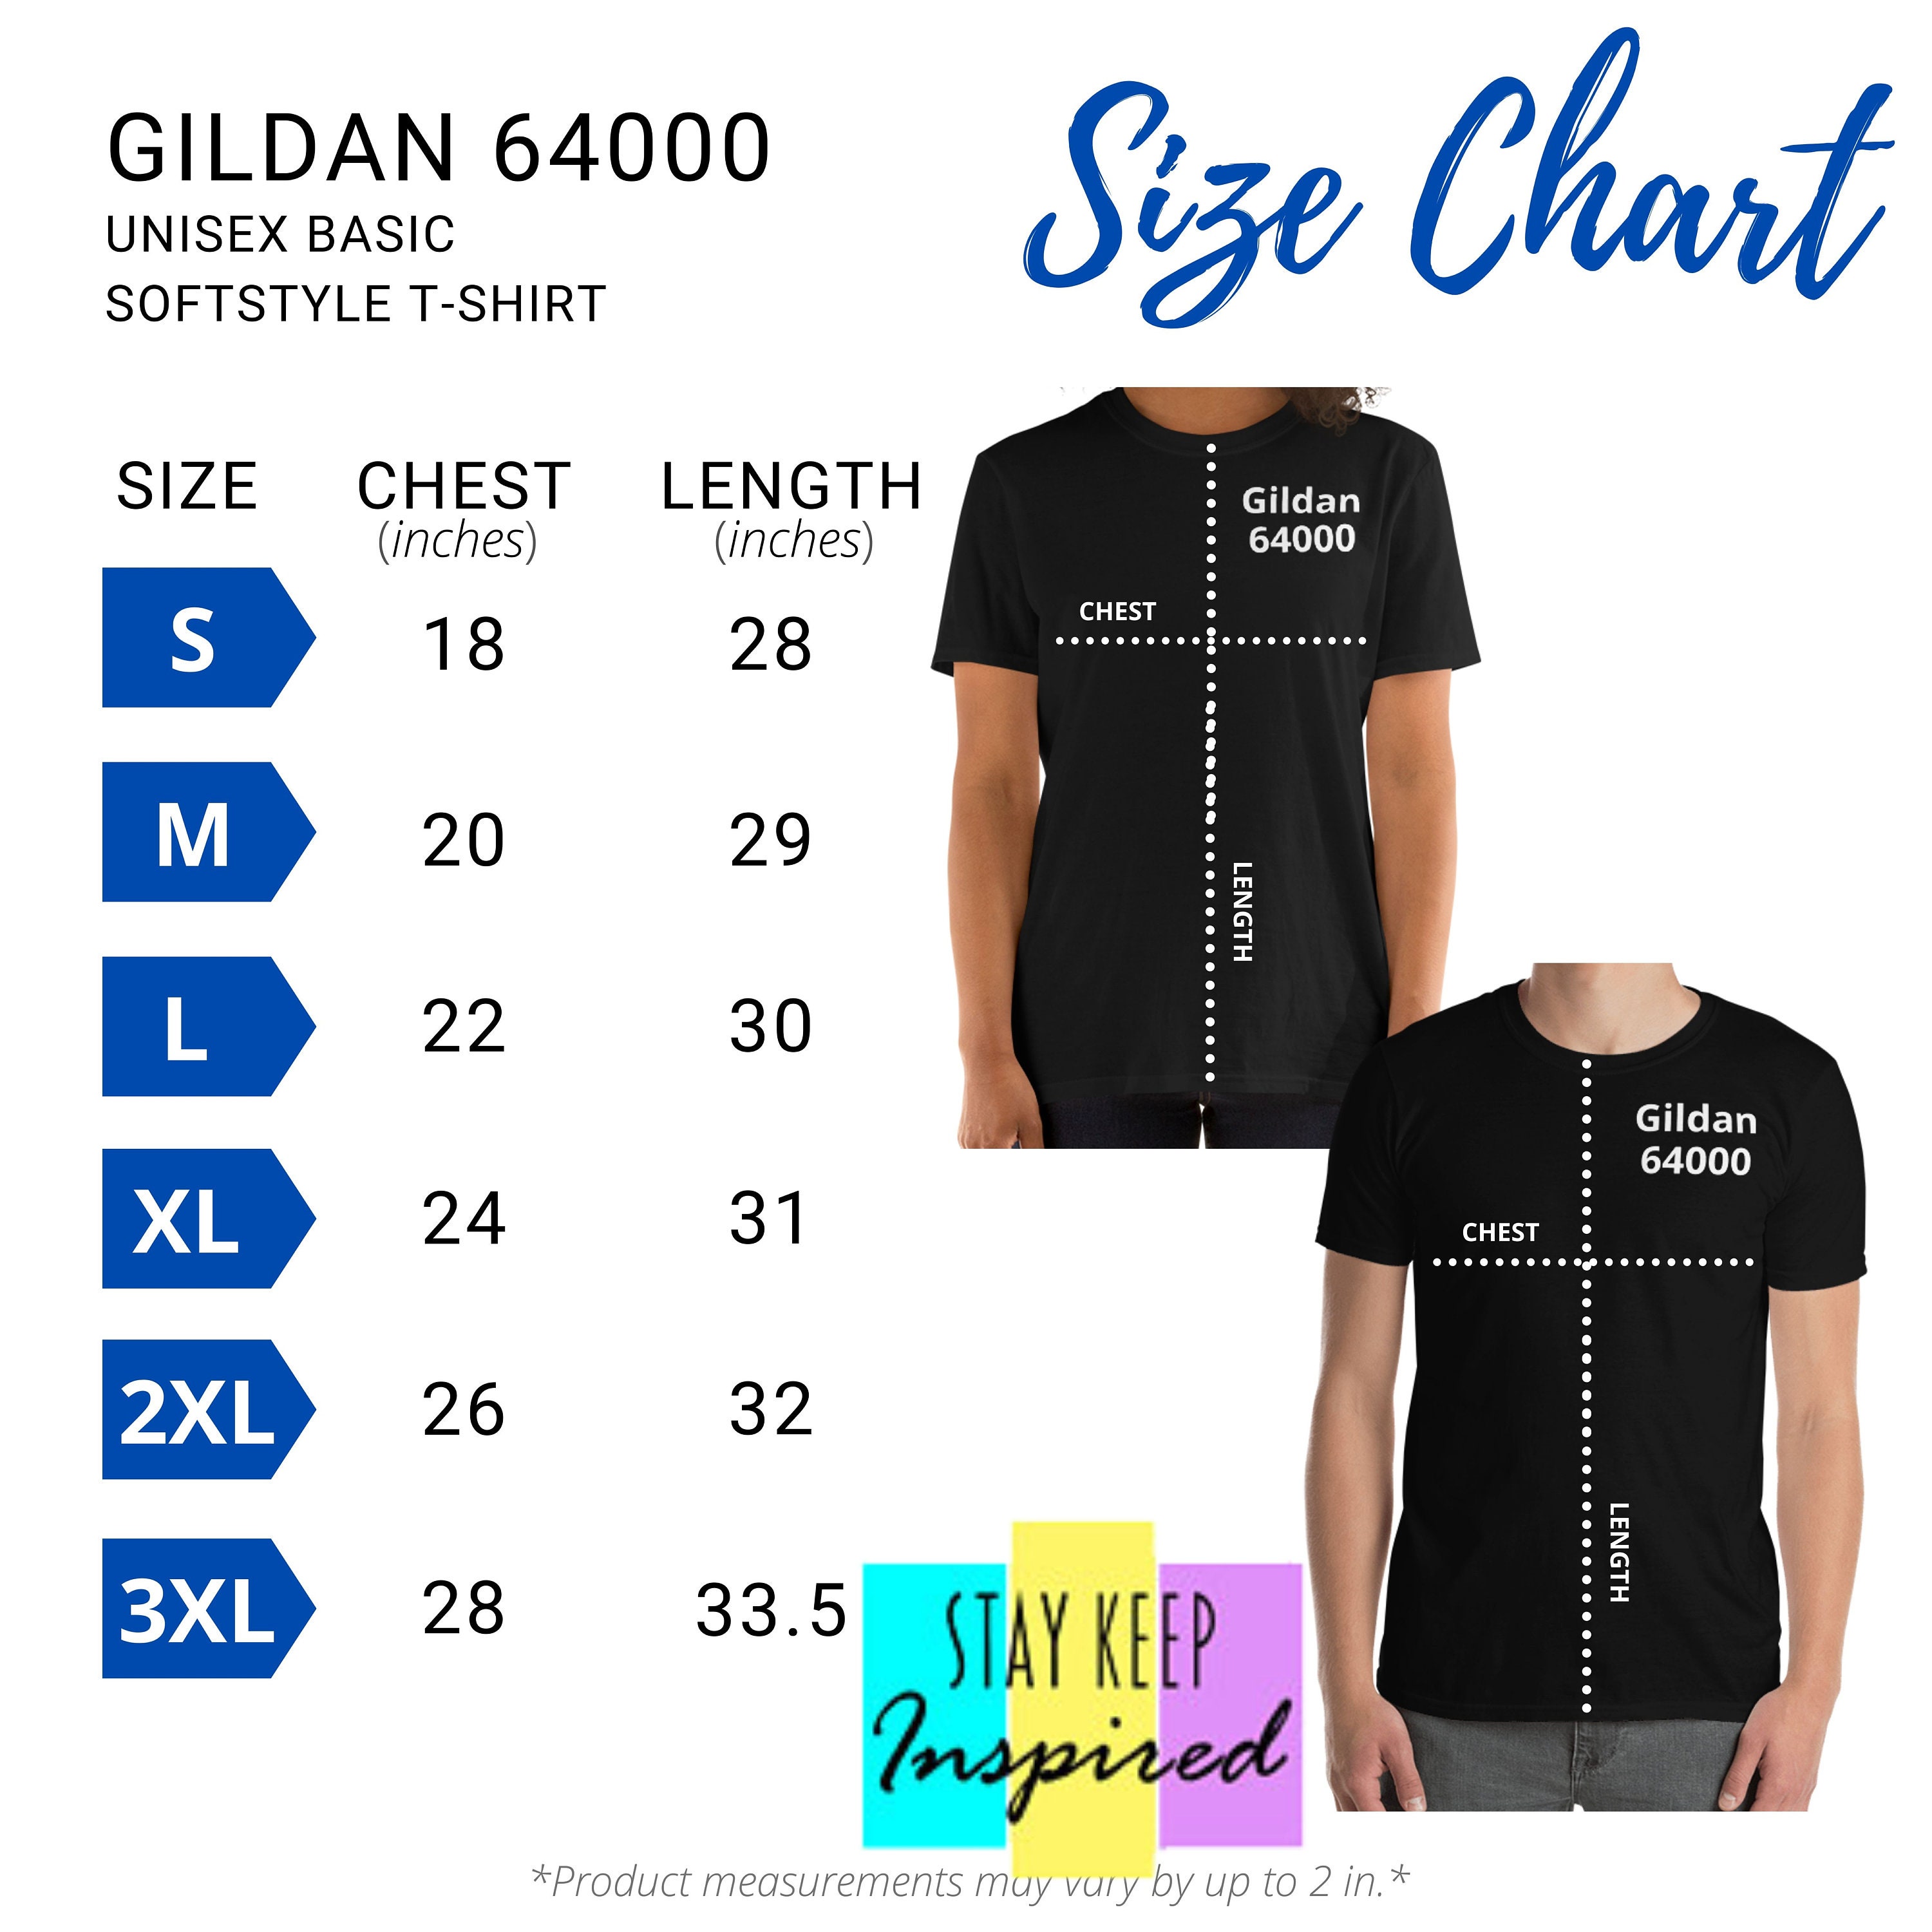 gildan-64000-unisex-basic-softstyle-camiseta-size-chart-etsy